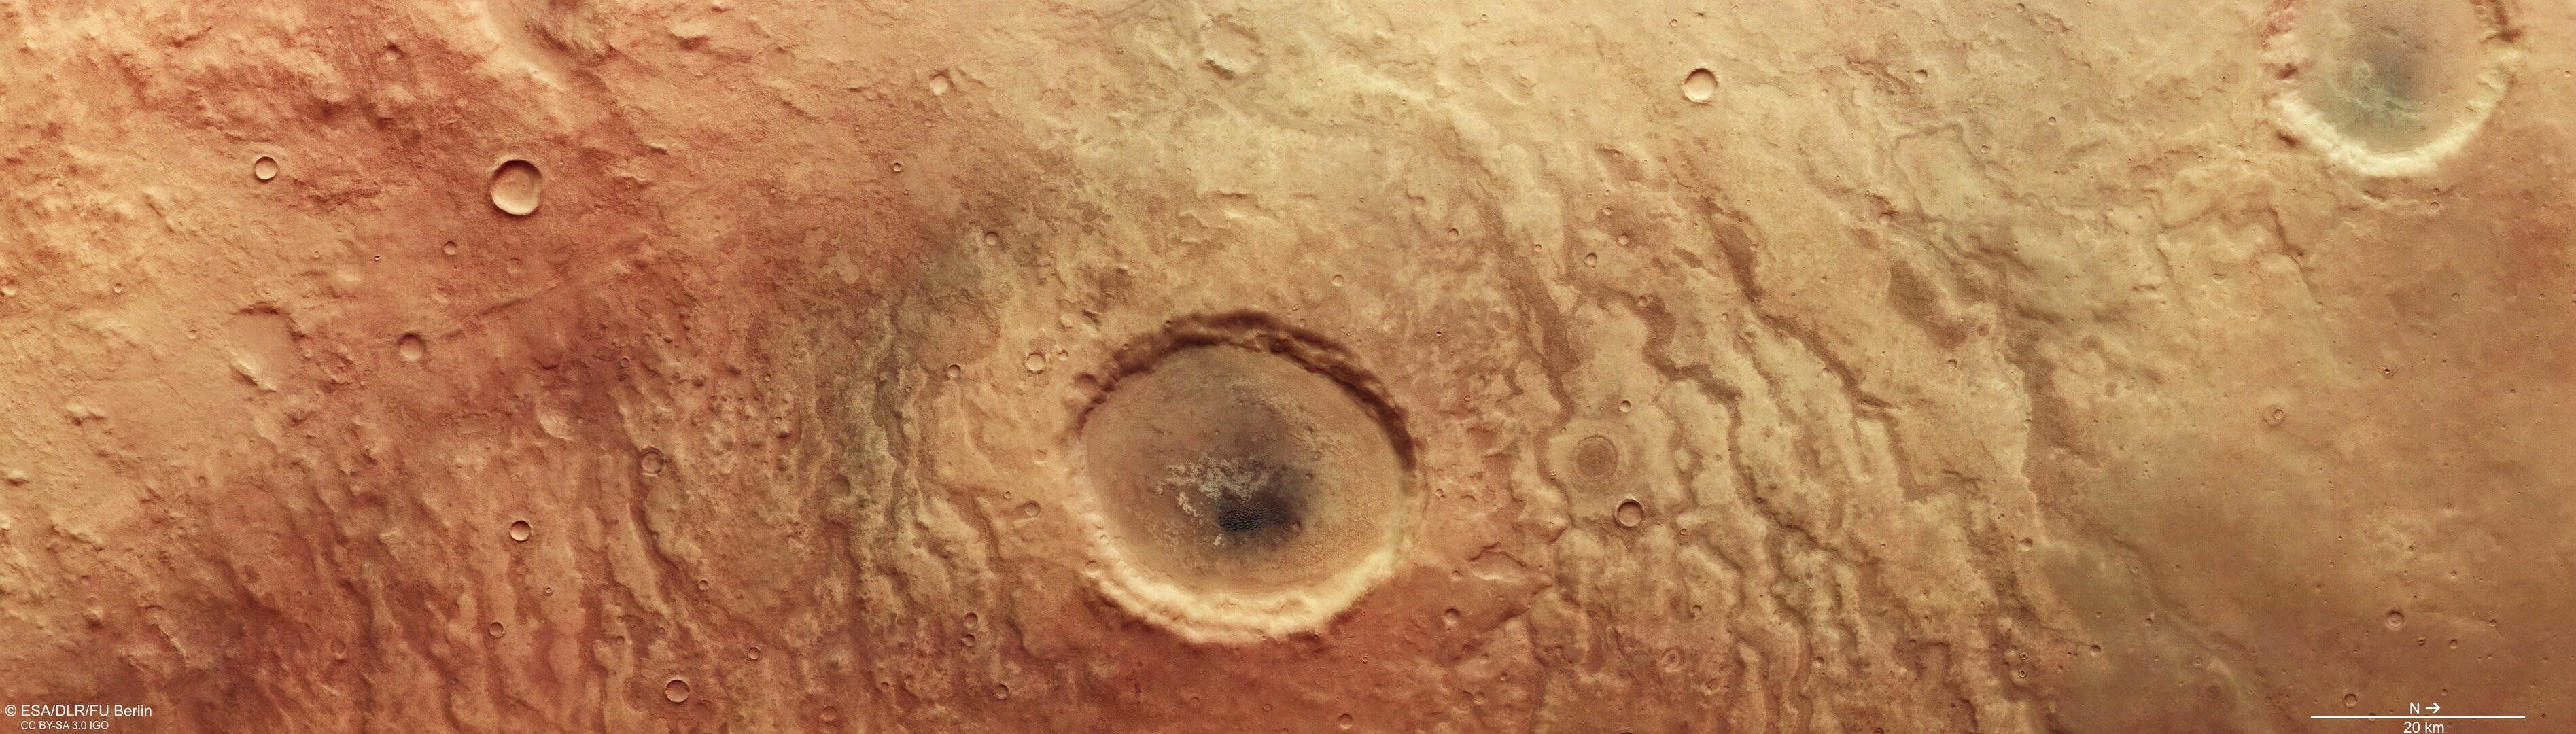 Cratera em Marte (Foto: Divulgação)